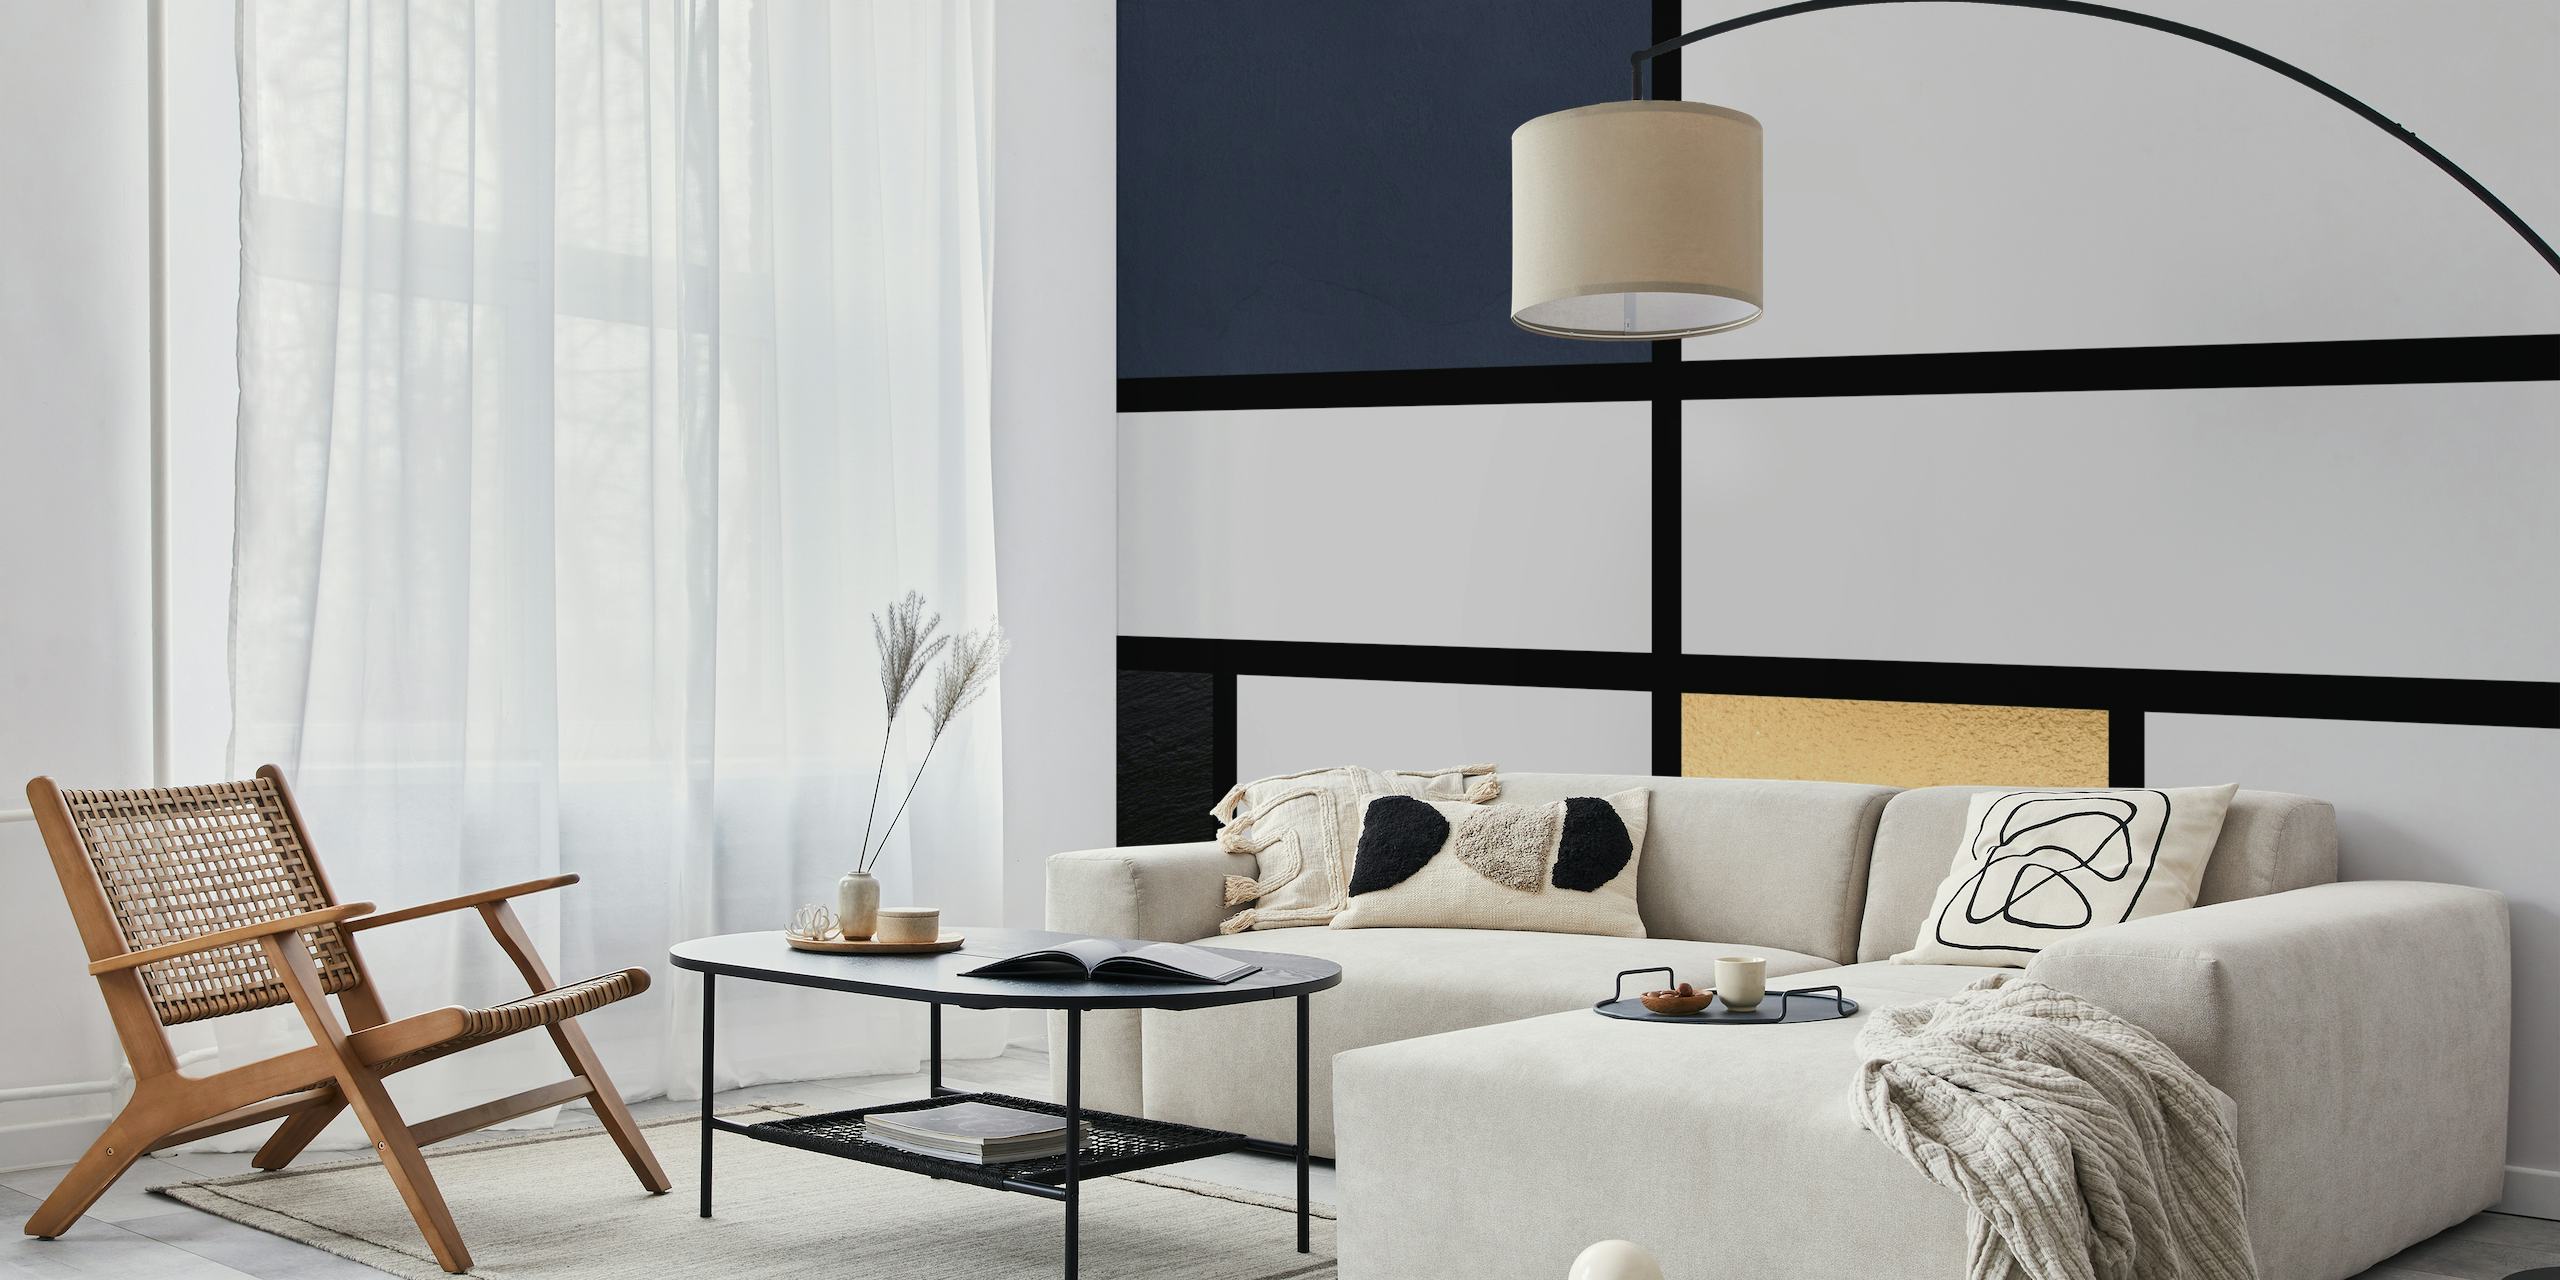 Geometrisch fotobehang met nachtblauwe, zachtgrijze en gouden accenten in een minimalistisch design